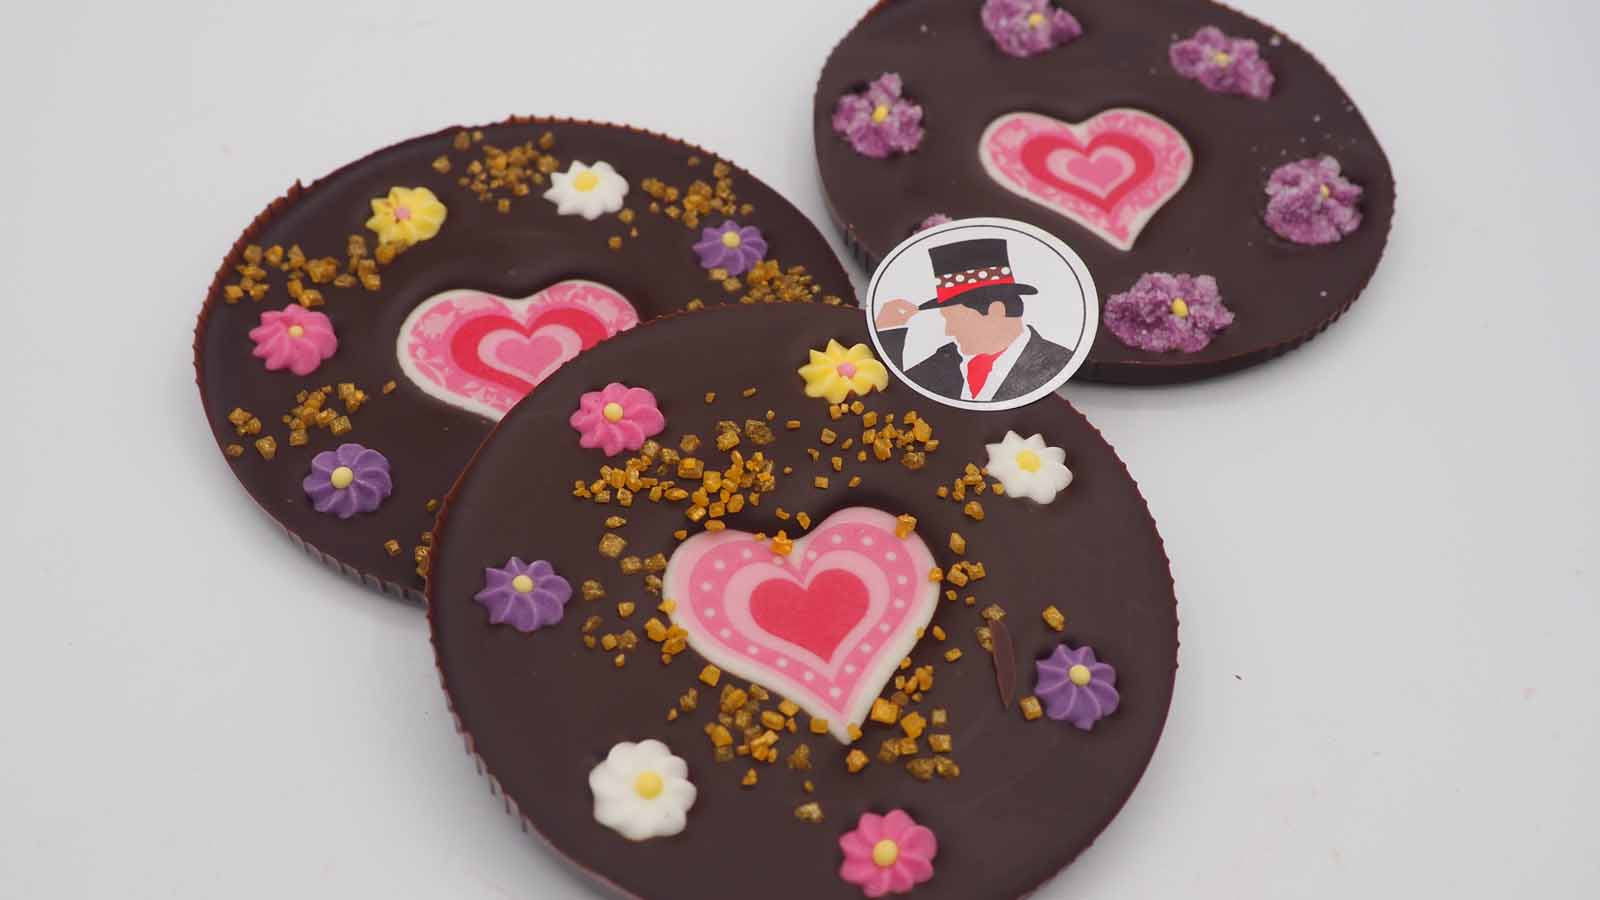 Handgezogene Scheiben aus Zartbitterschokolade mit Zuckerherzen, Zuckerblümchen und Dekormasse (rosa Herzen in verschiedenen Variationen) zum Muttertag.